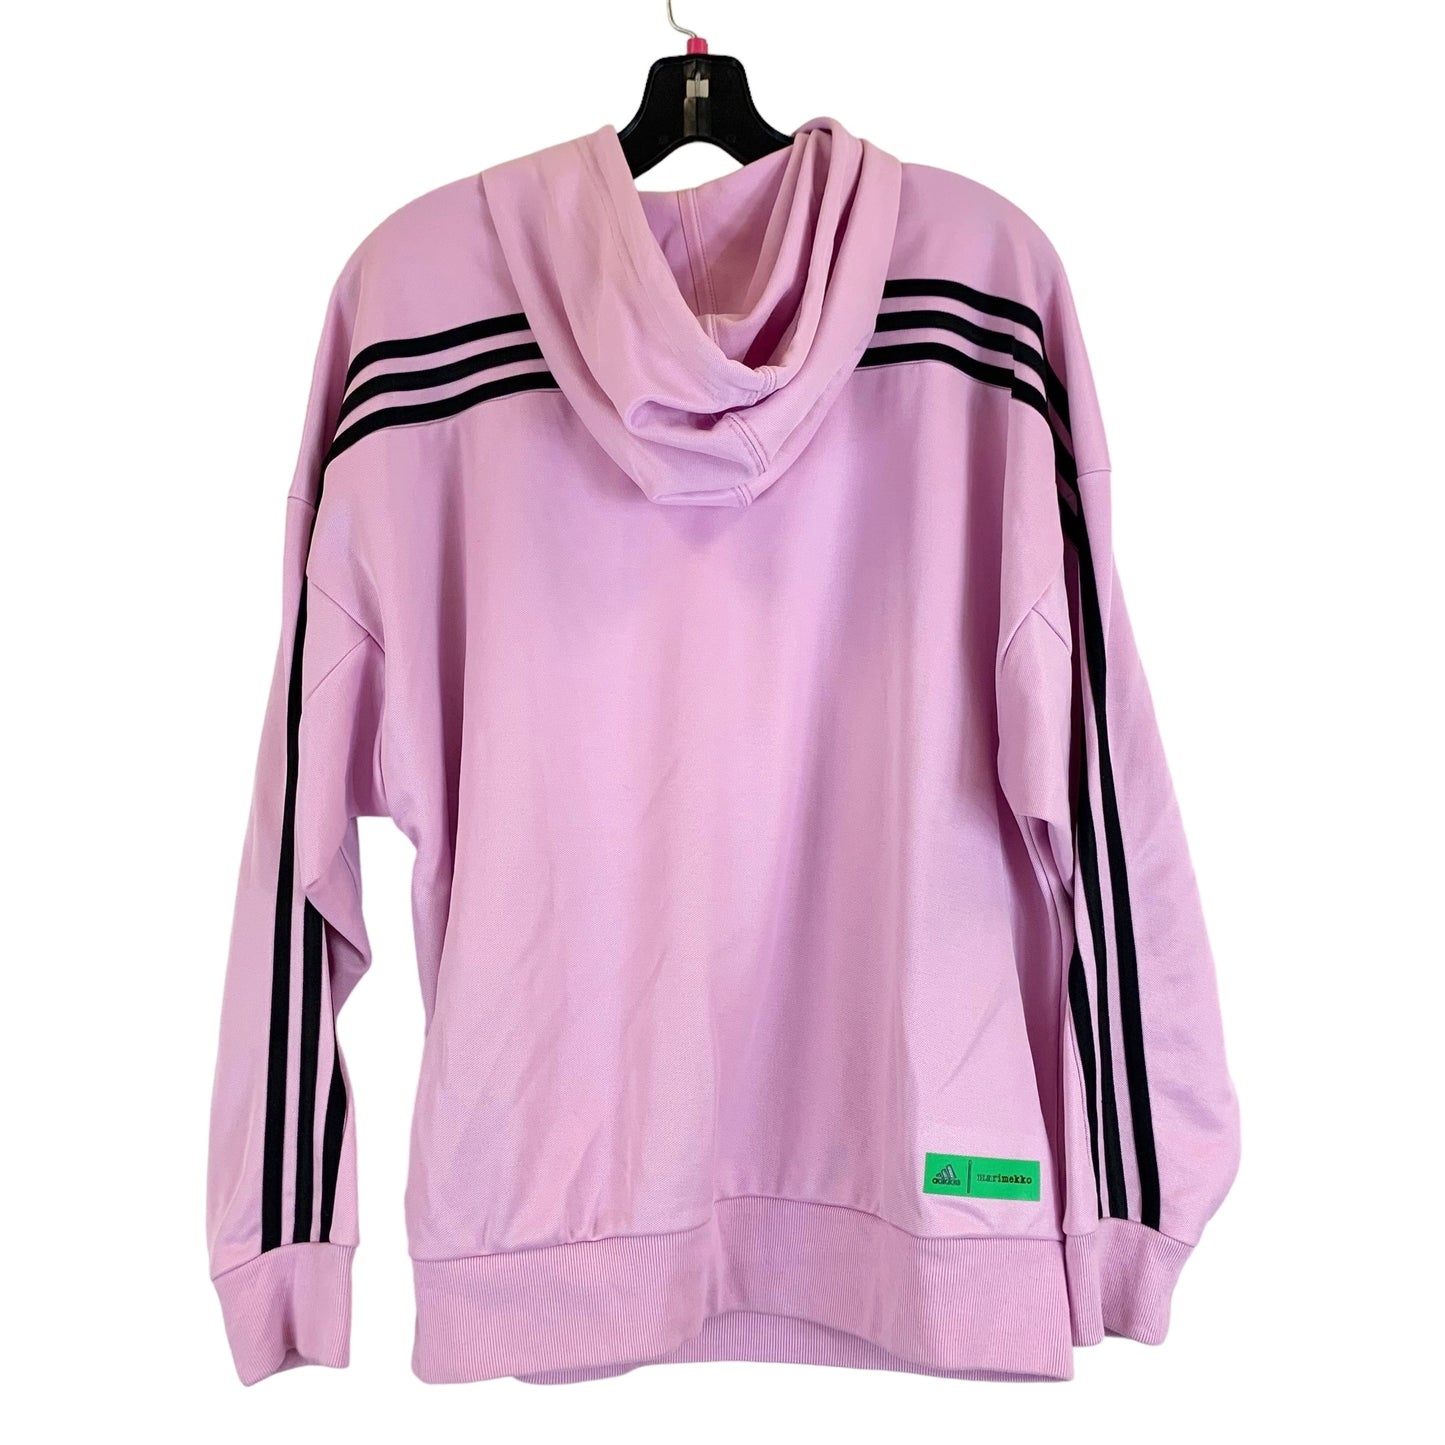 Black & Pink Athletic Sweatshirt Hoodie Adidas, Size S